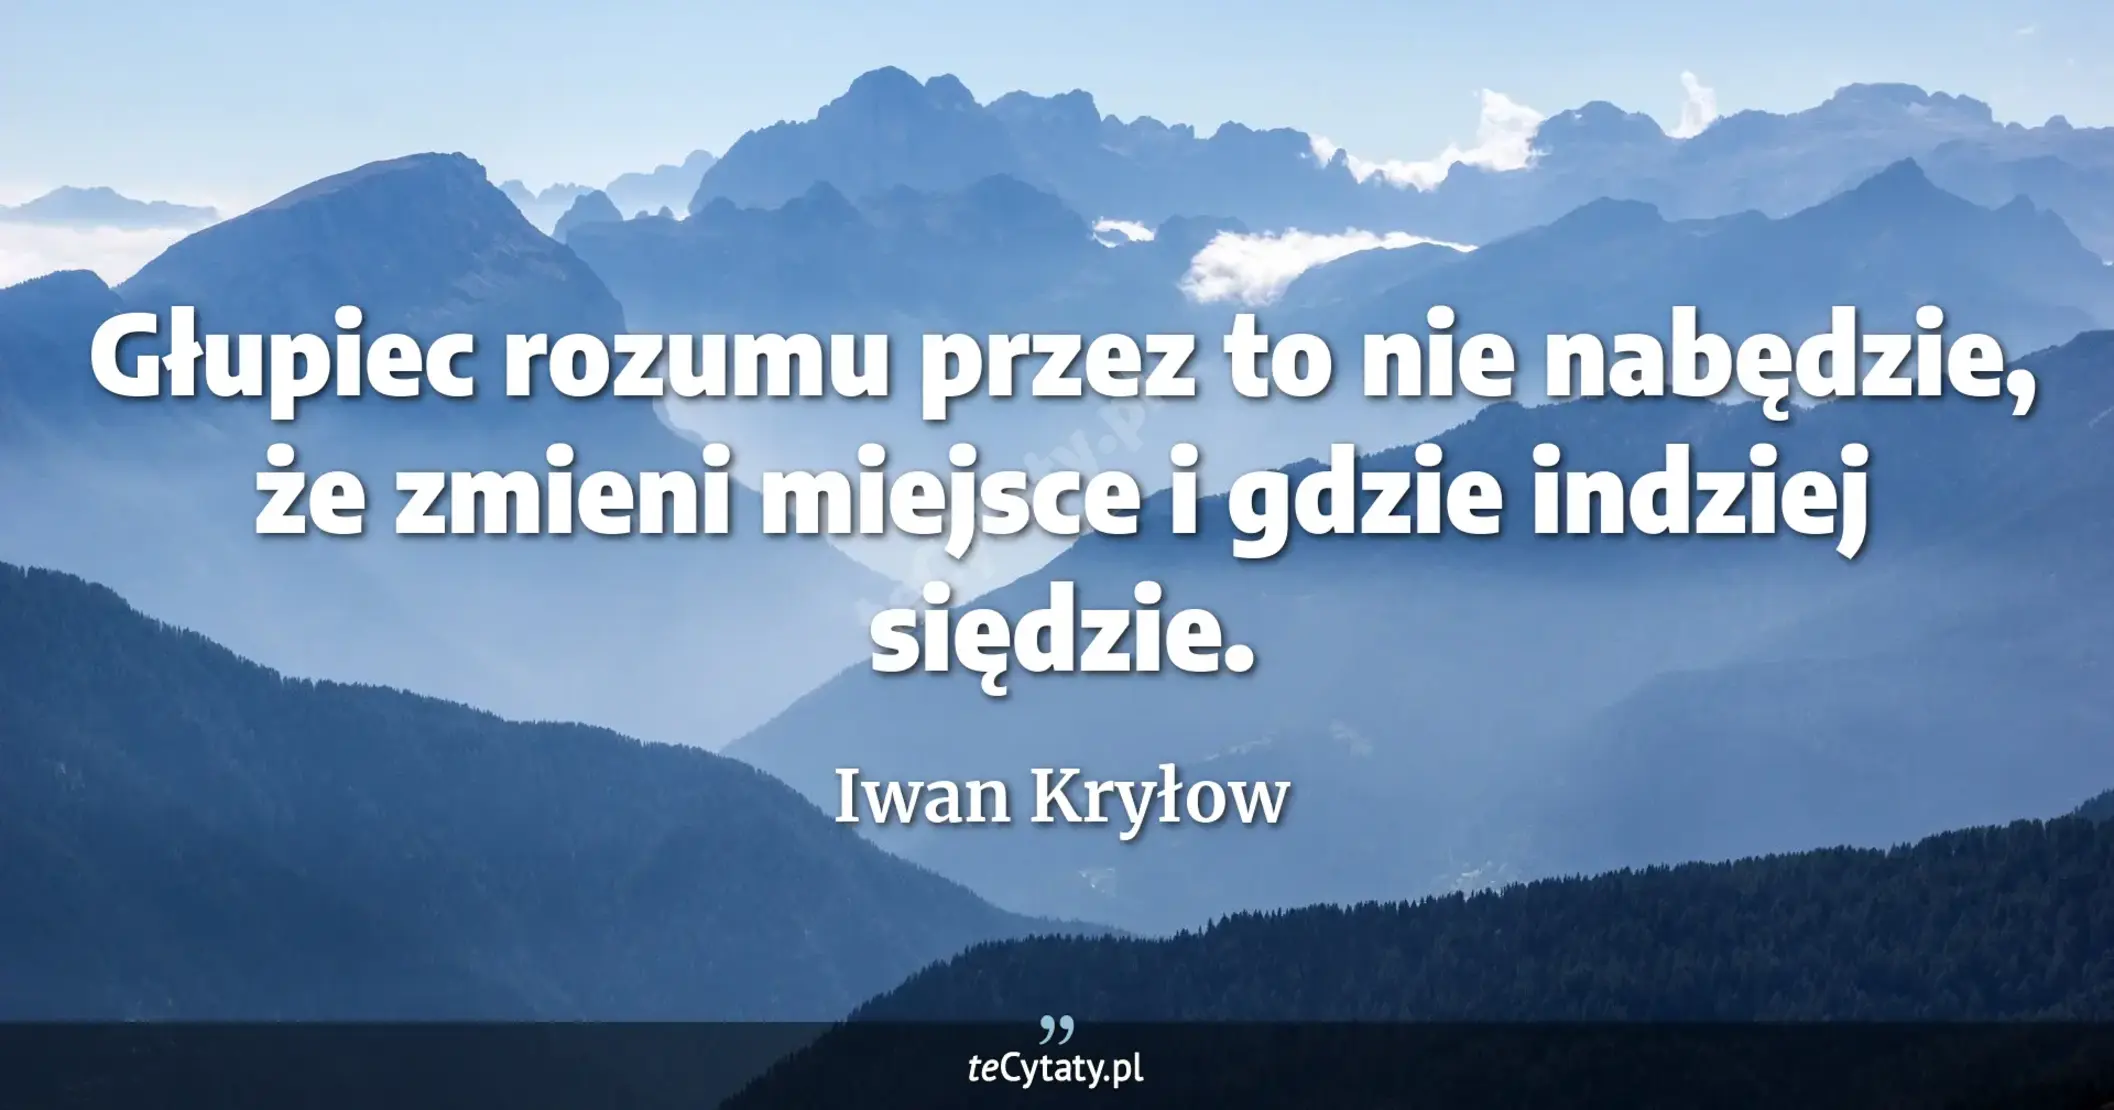 Głupiec rozumu przez to nie nabędzie, <br> że zmieni miejsce i gdzie indziej siędzie. - Iwan Kryłow